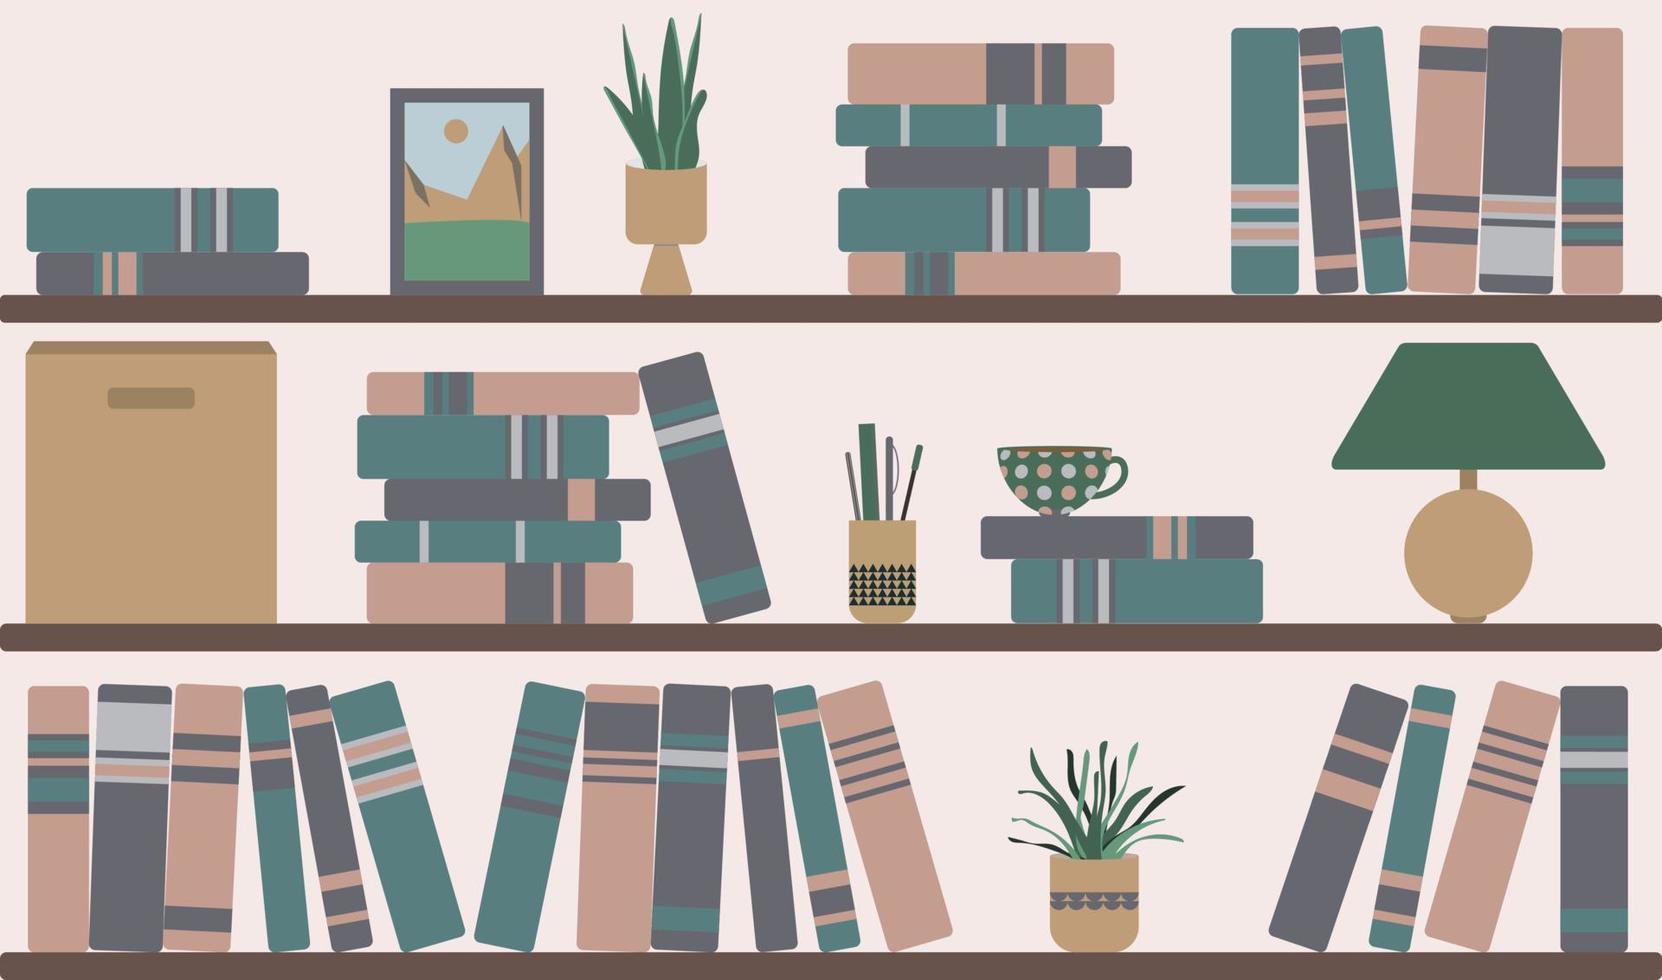 roze muur met boekenplanken. huisplant in de buurt van stapels literatuur, doos, lamp en afbeelding van bergen. kopje koffie grafisch ontwerp in thuisbibliotheek of boekhandel interieur. vector